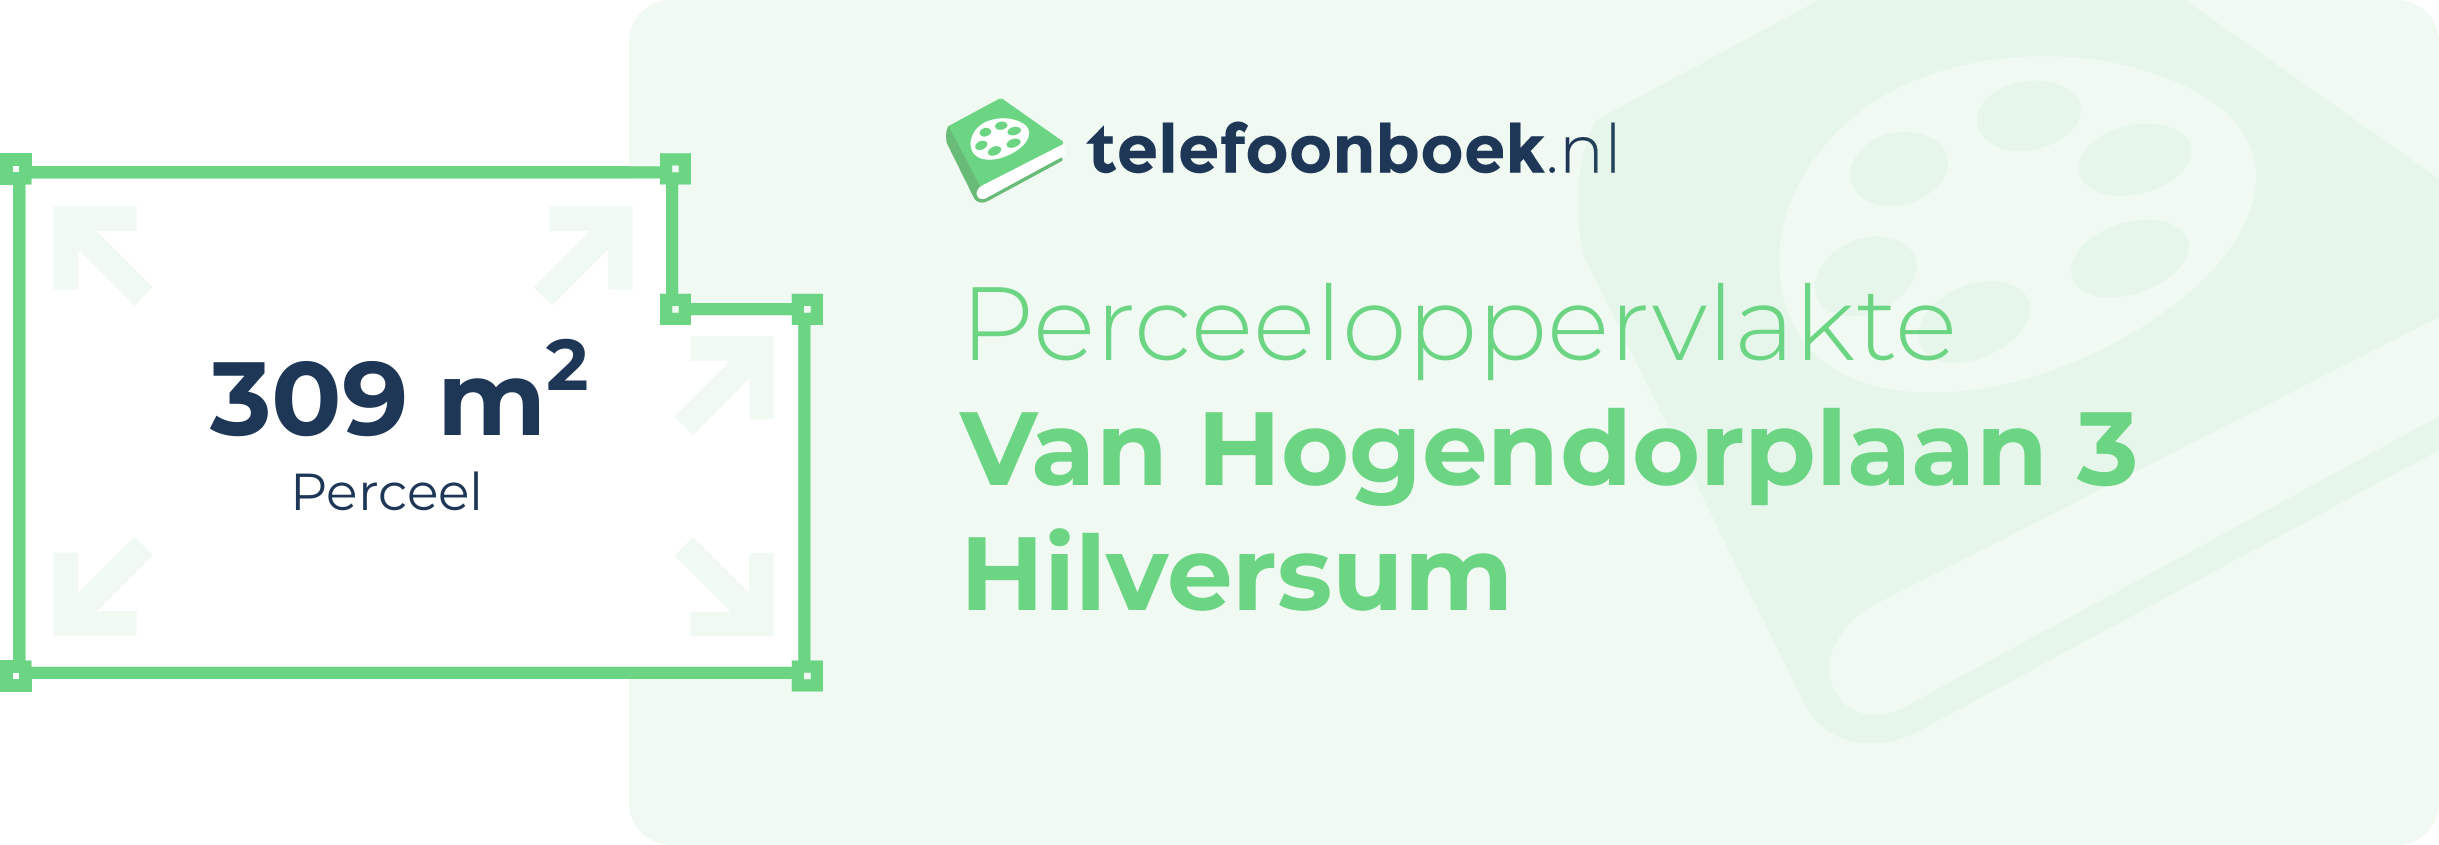 Perceeloppervlakte Van Hogendorplaan 3 Hilversum